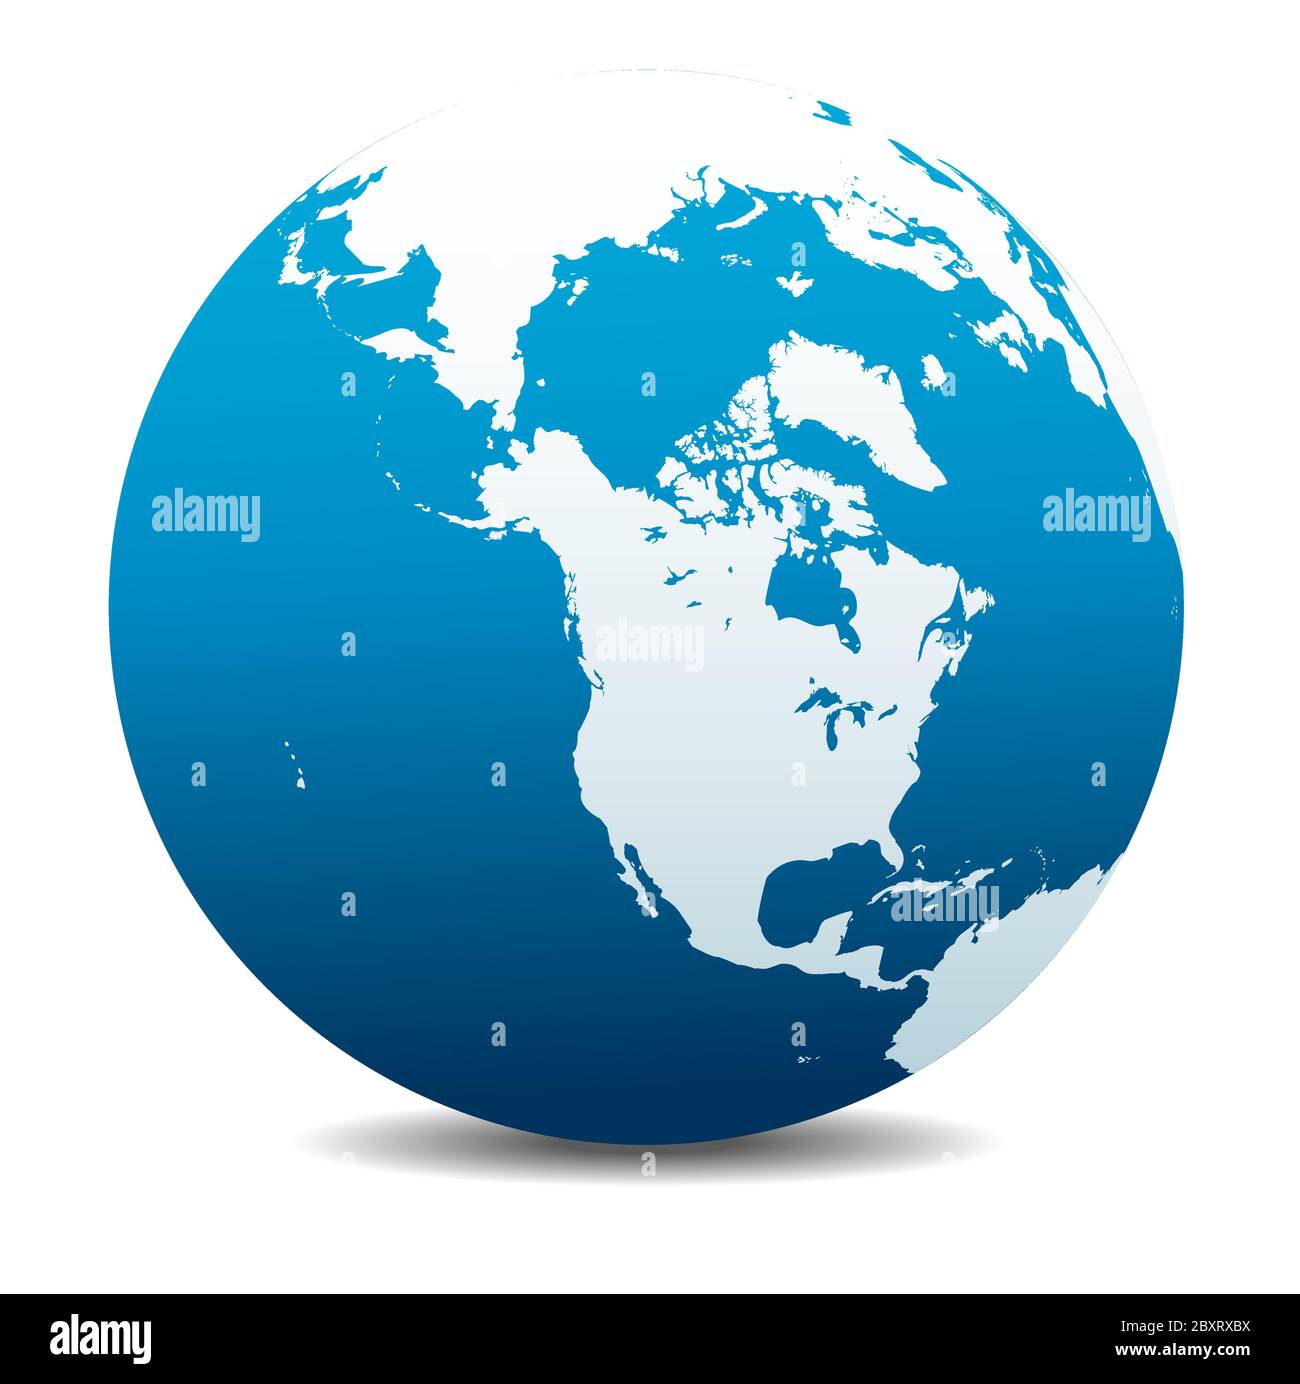 Canada, Nord America, Siberia e Giappone. Icona Mappa vettoriale del globo mondiale, Terra. Tutti gli elementi si trovano su singoli livelli nel file vettoriale. Illustrazione Vettoriale